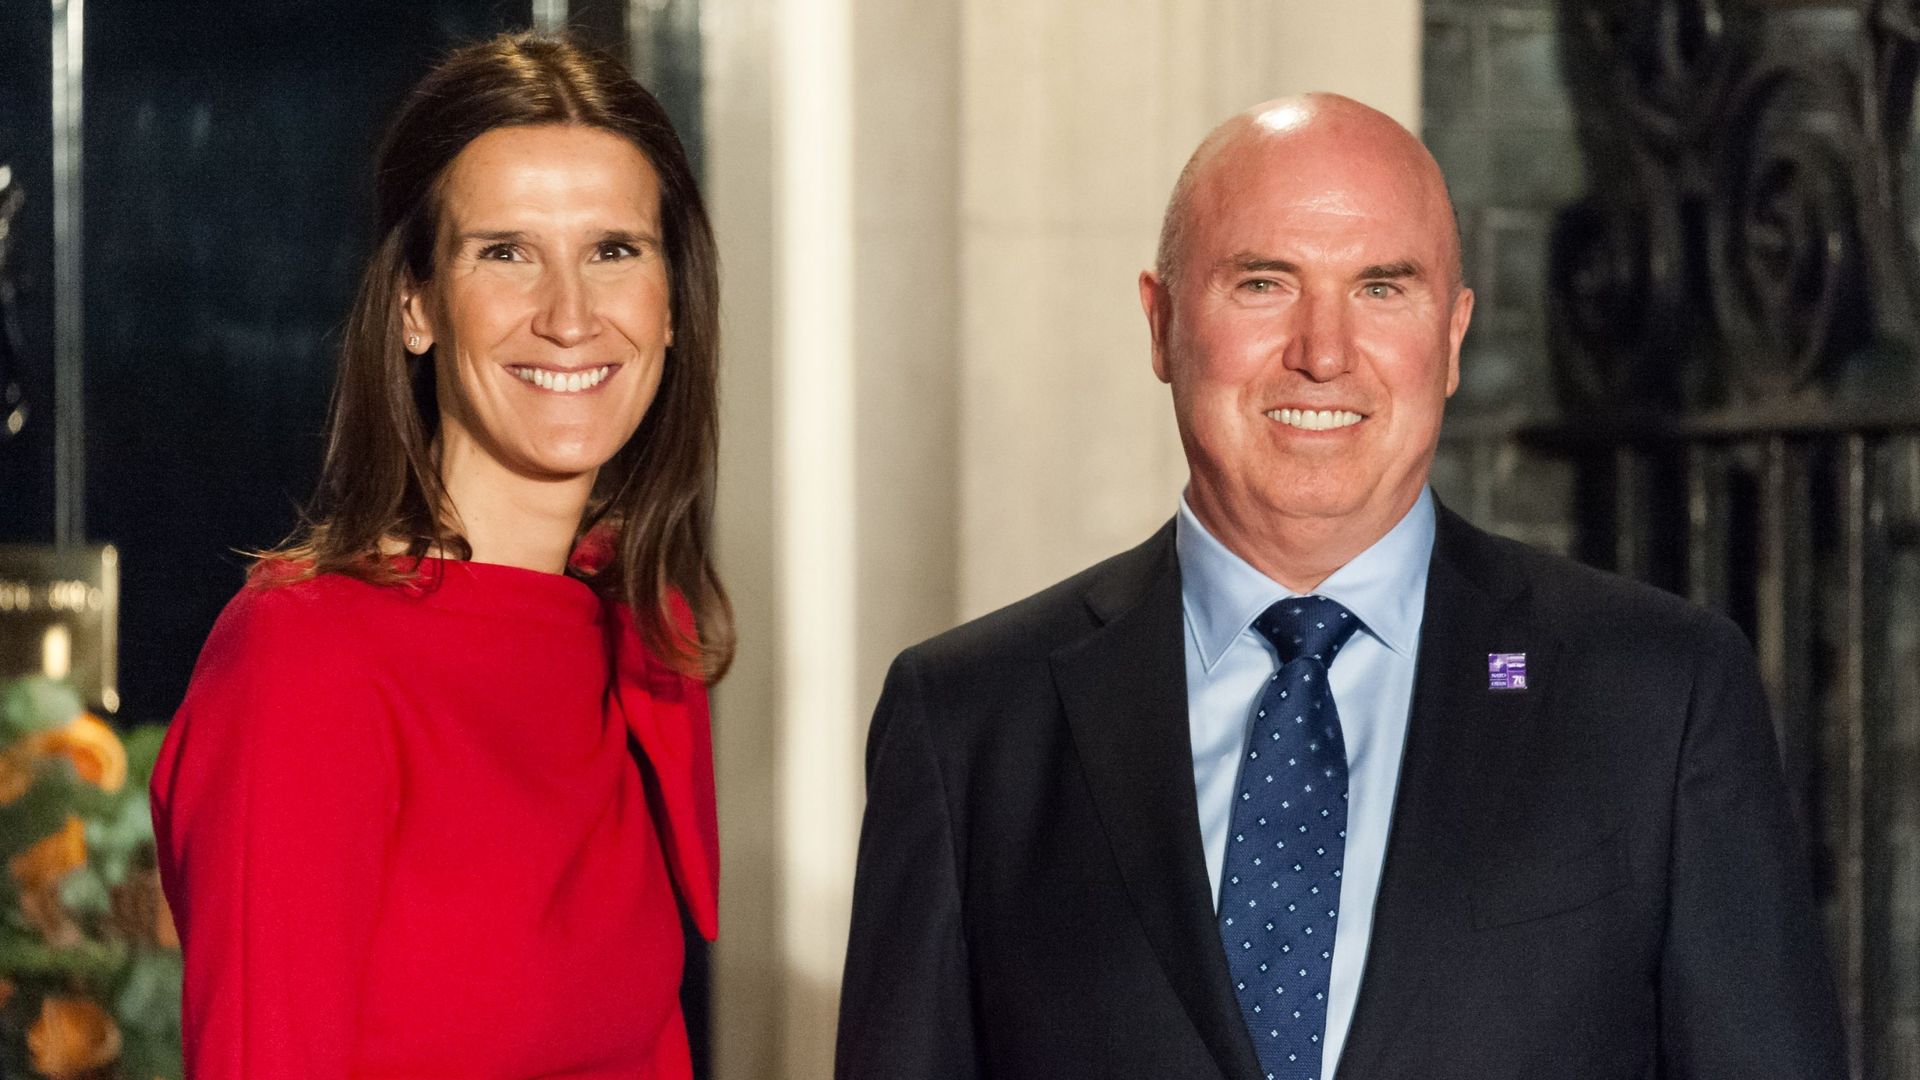 Sophie Wilmès et son mari, Christopher Stone, lors d’une réception à Downing Street, la résidence du Premier ministre britannique, en décembre 2019.